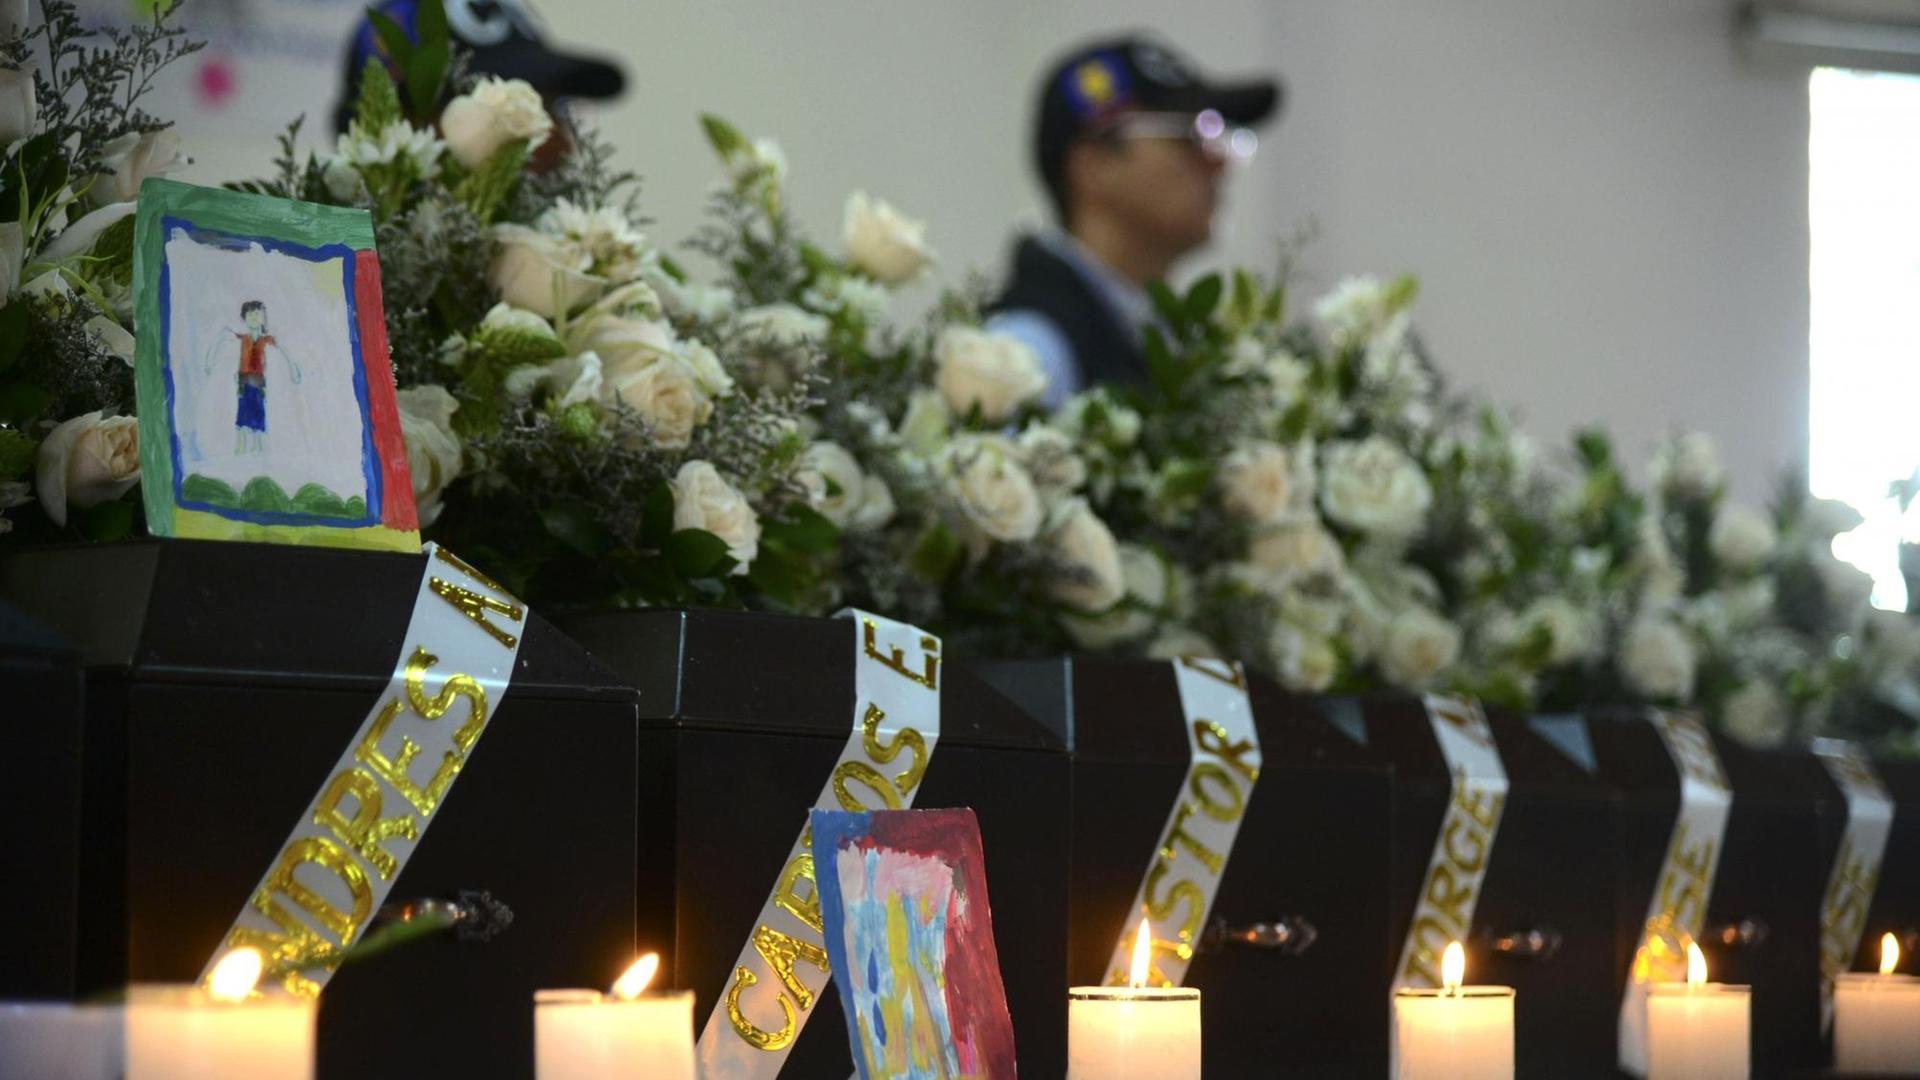 Trauerfeier für Opfer des kolumbianischen Bürgerkriegs. Linke und rechte Guerilla-Gruppen begingen schwere Menschenrechtsverletzungen.